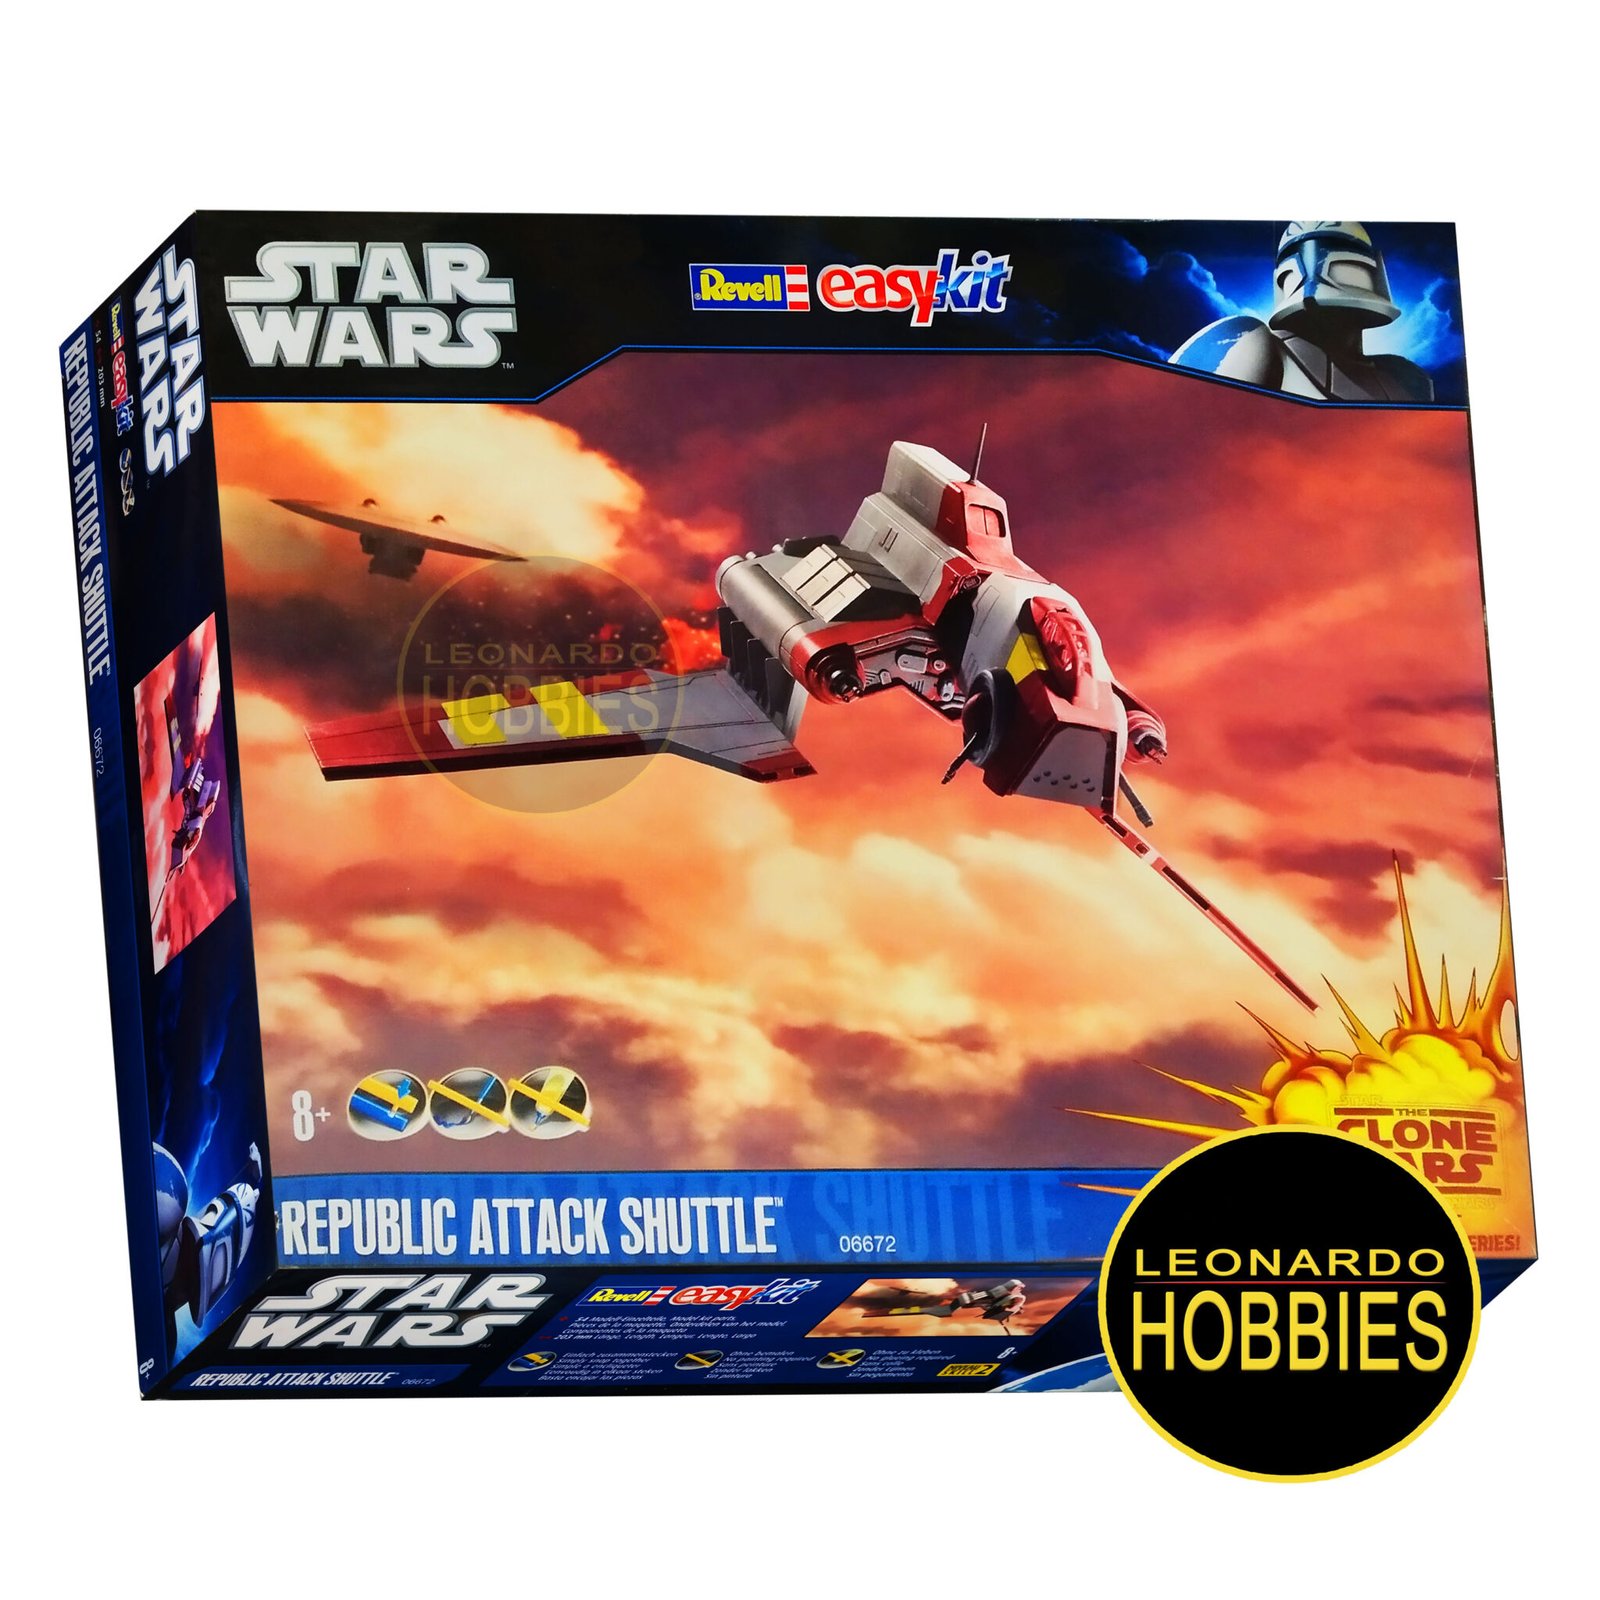 Republic Attack Shuttle Star Wars Easy Kit Revell 6672 – Leonardo Hobbies